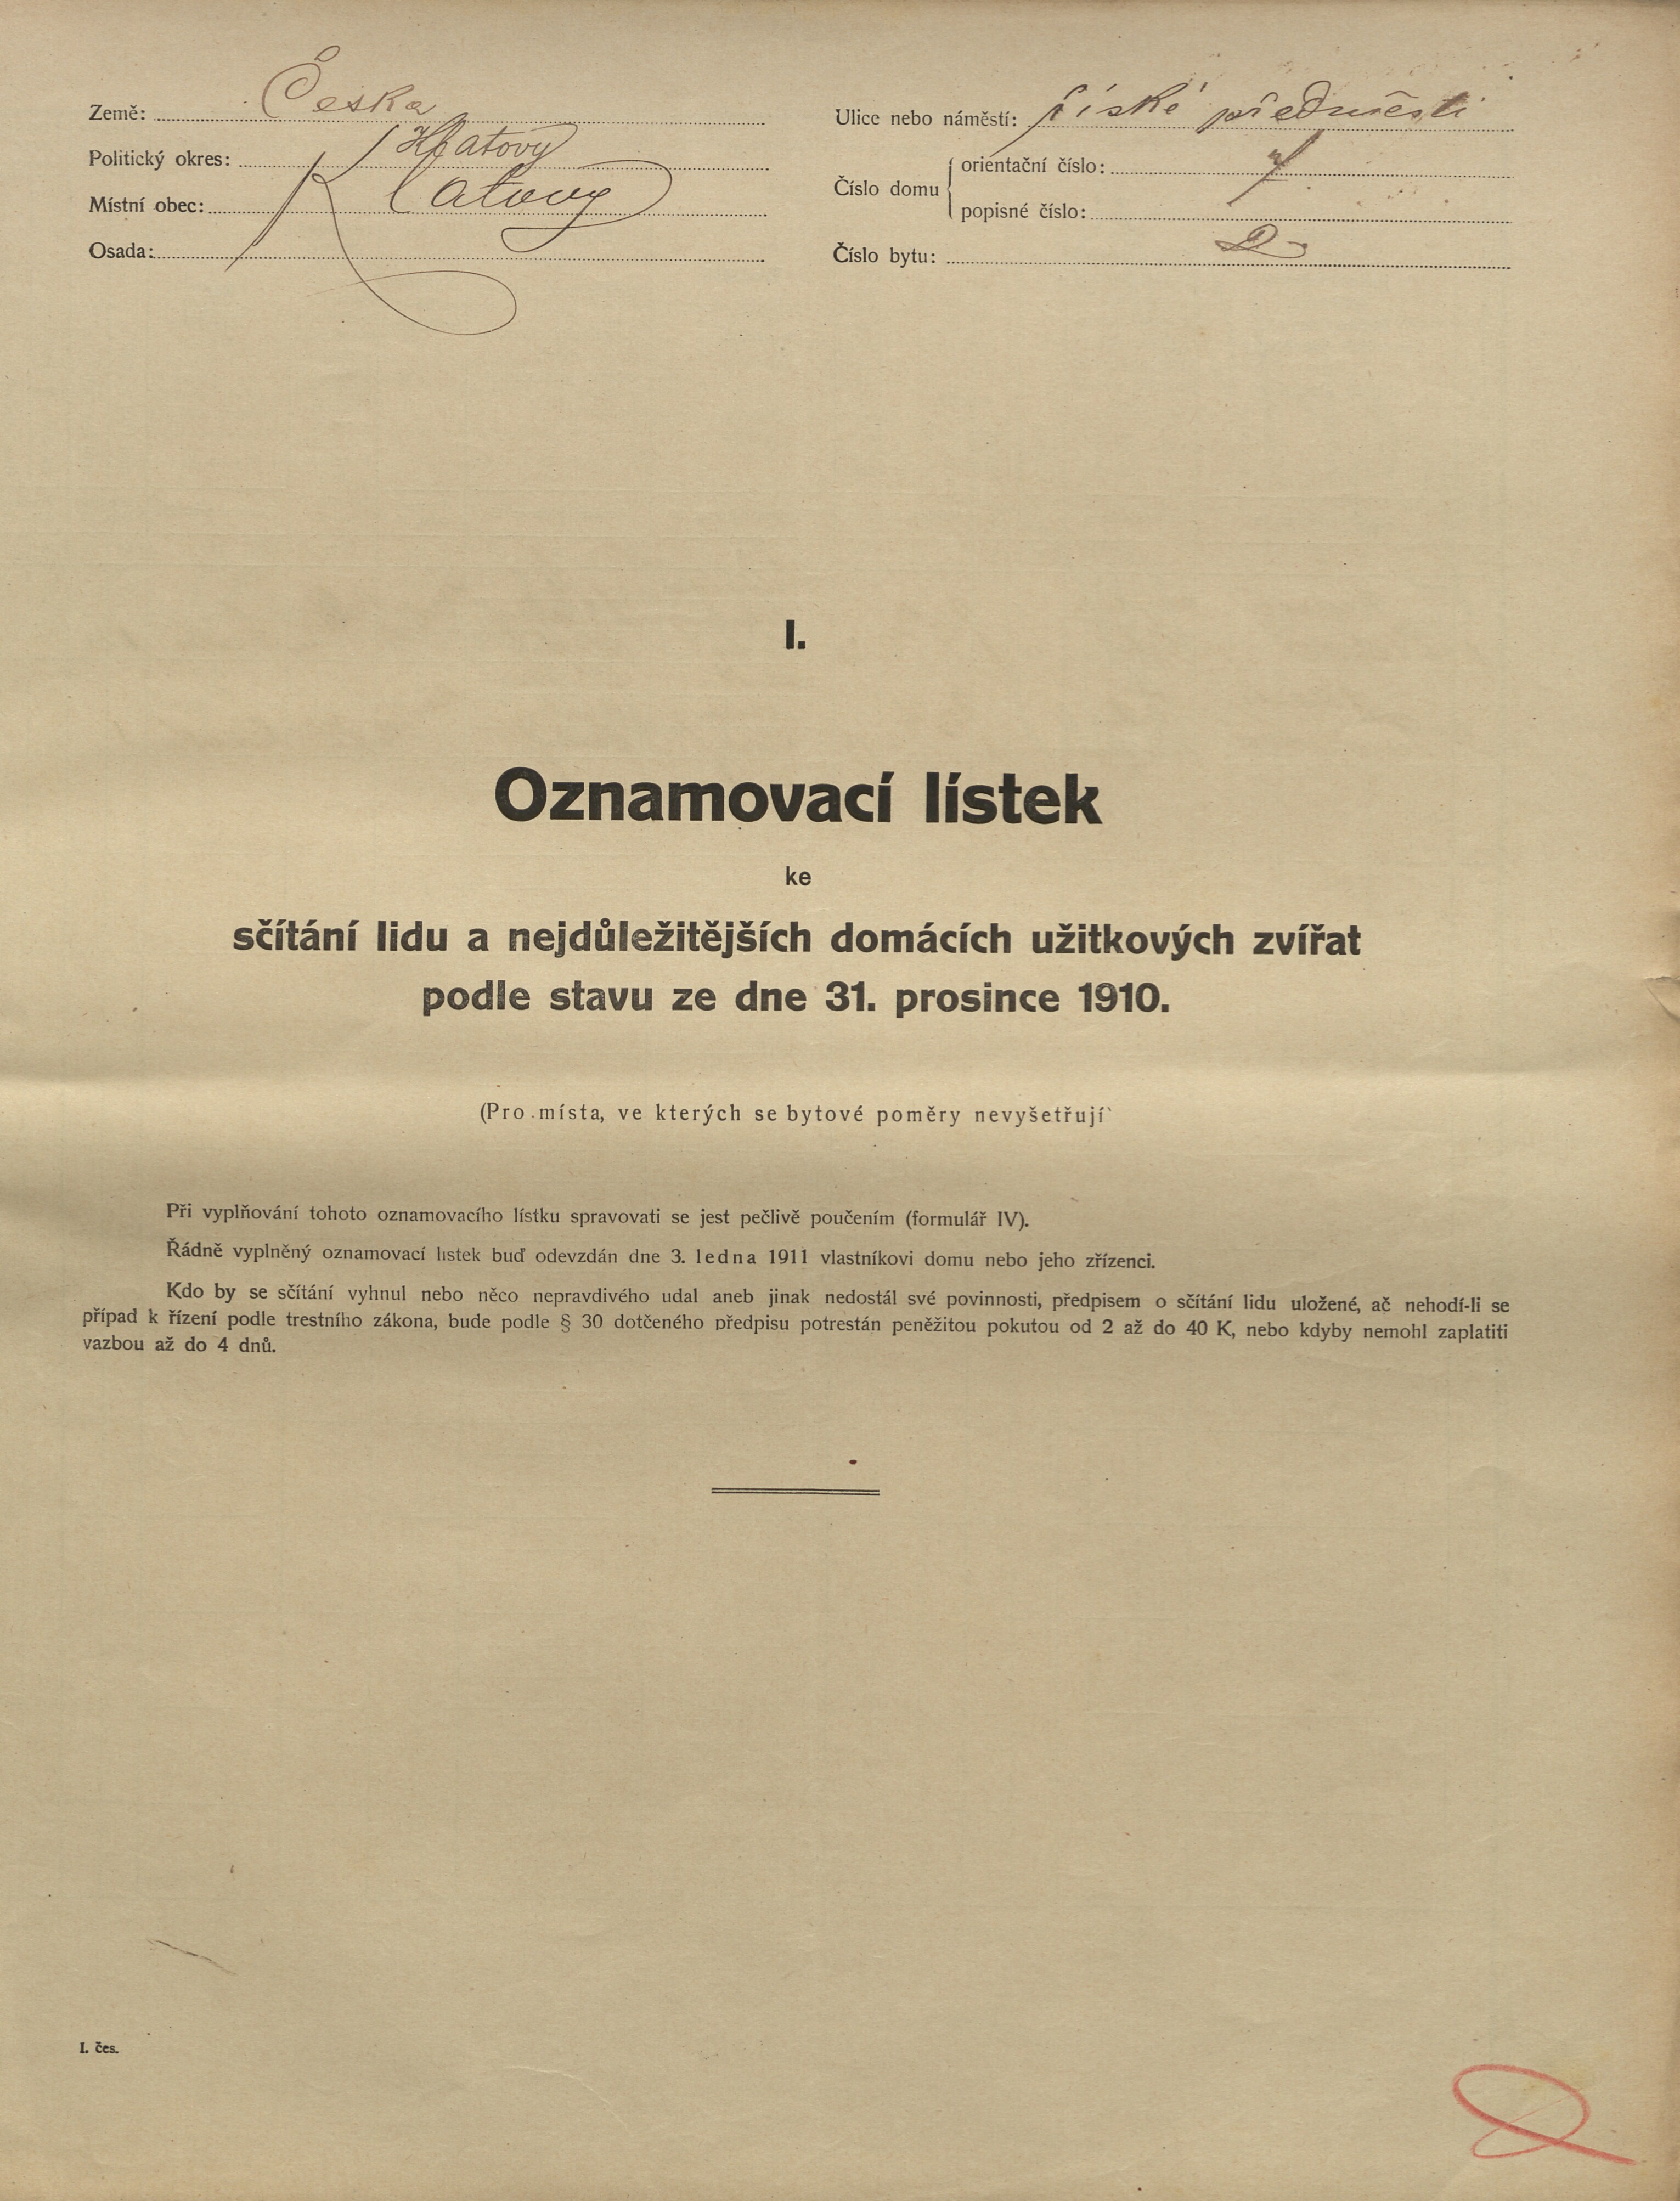 6. soap-kt_01159_census-1910-klatovy-risske-predmesti-cp007_0060